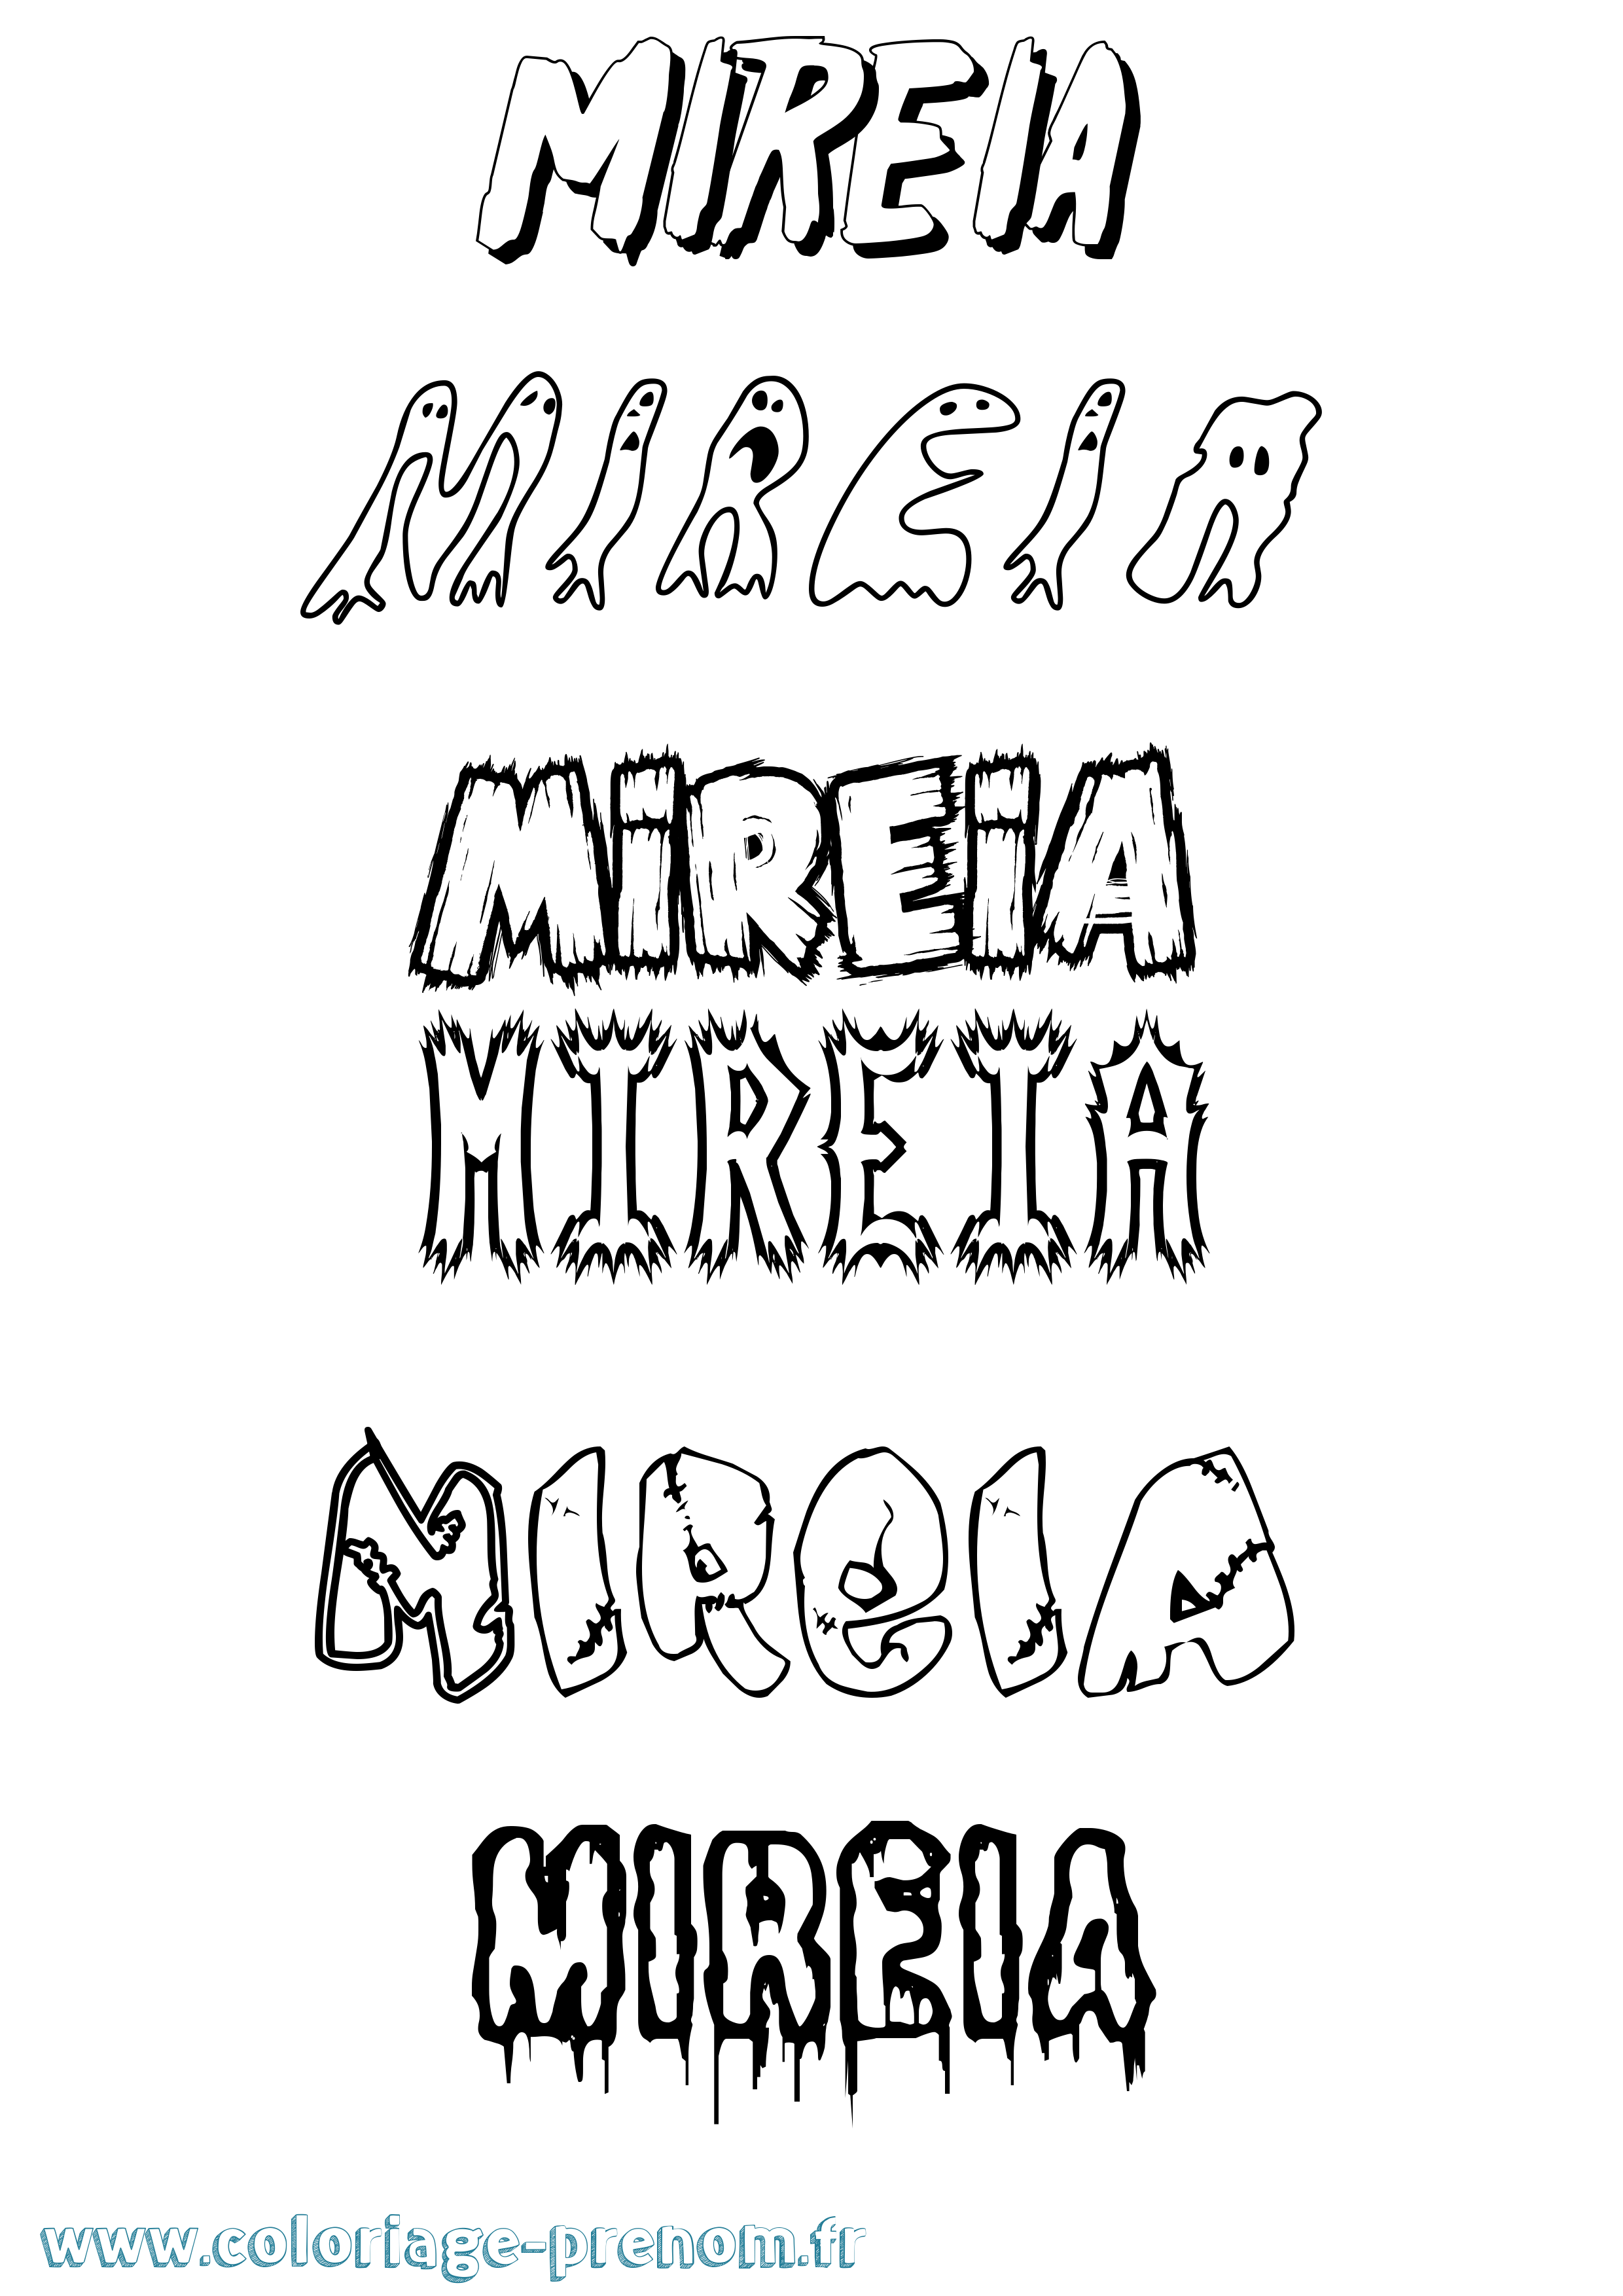 Coloriage prénom Mireia Frisson